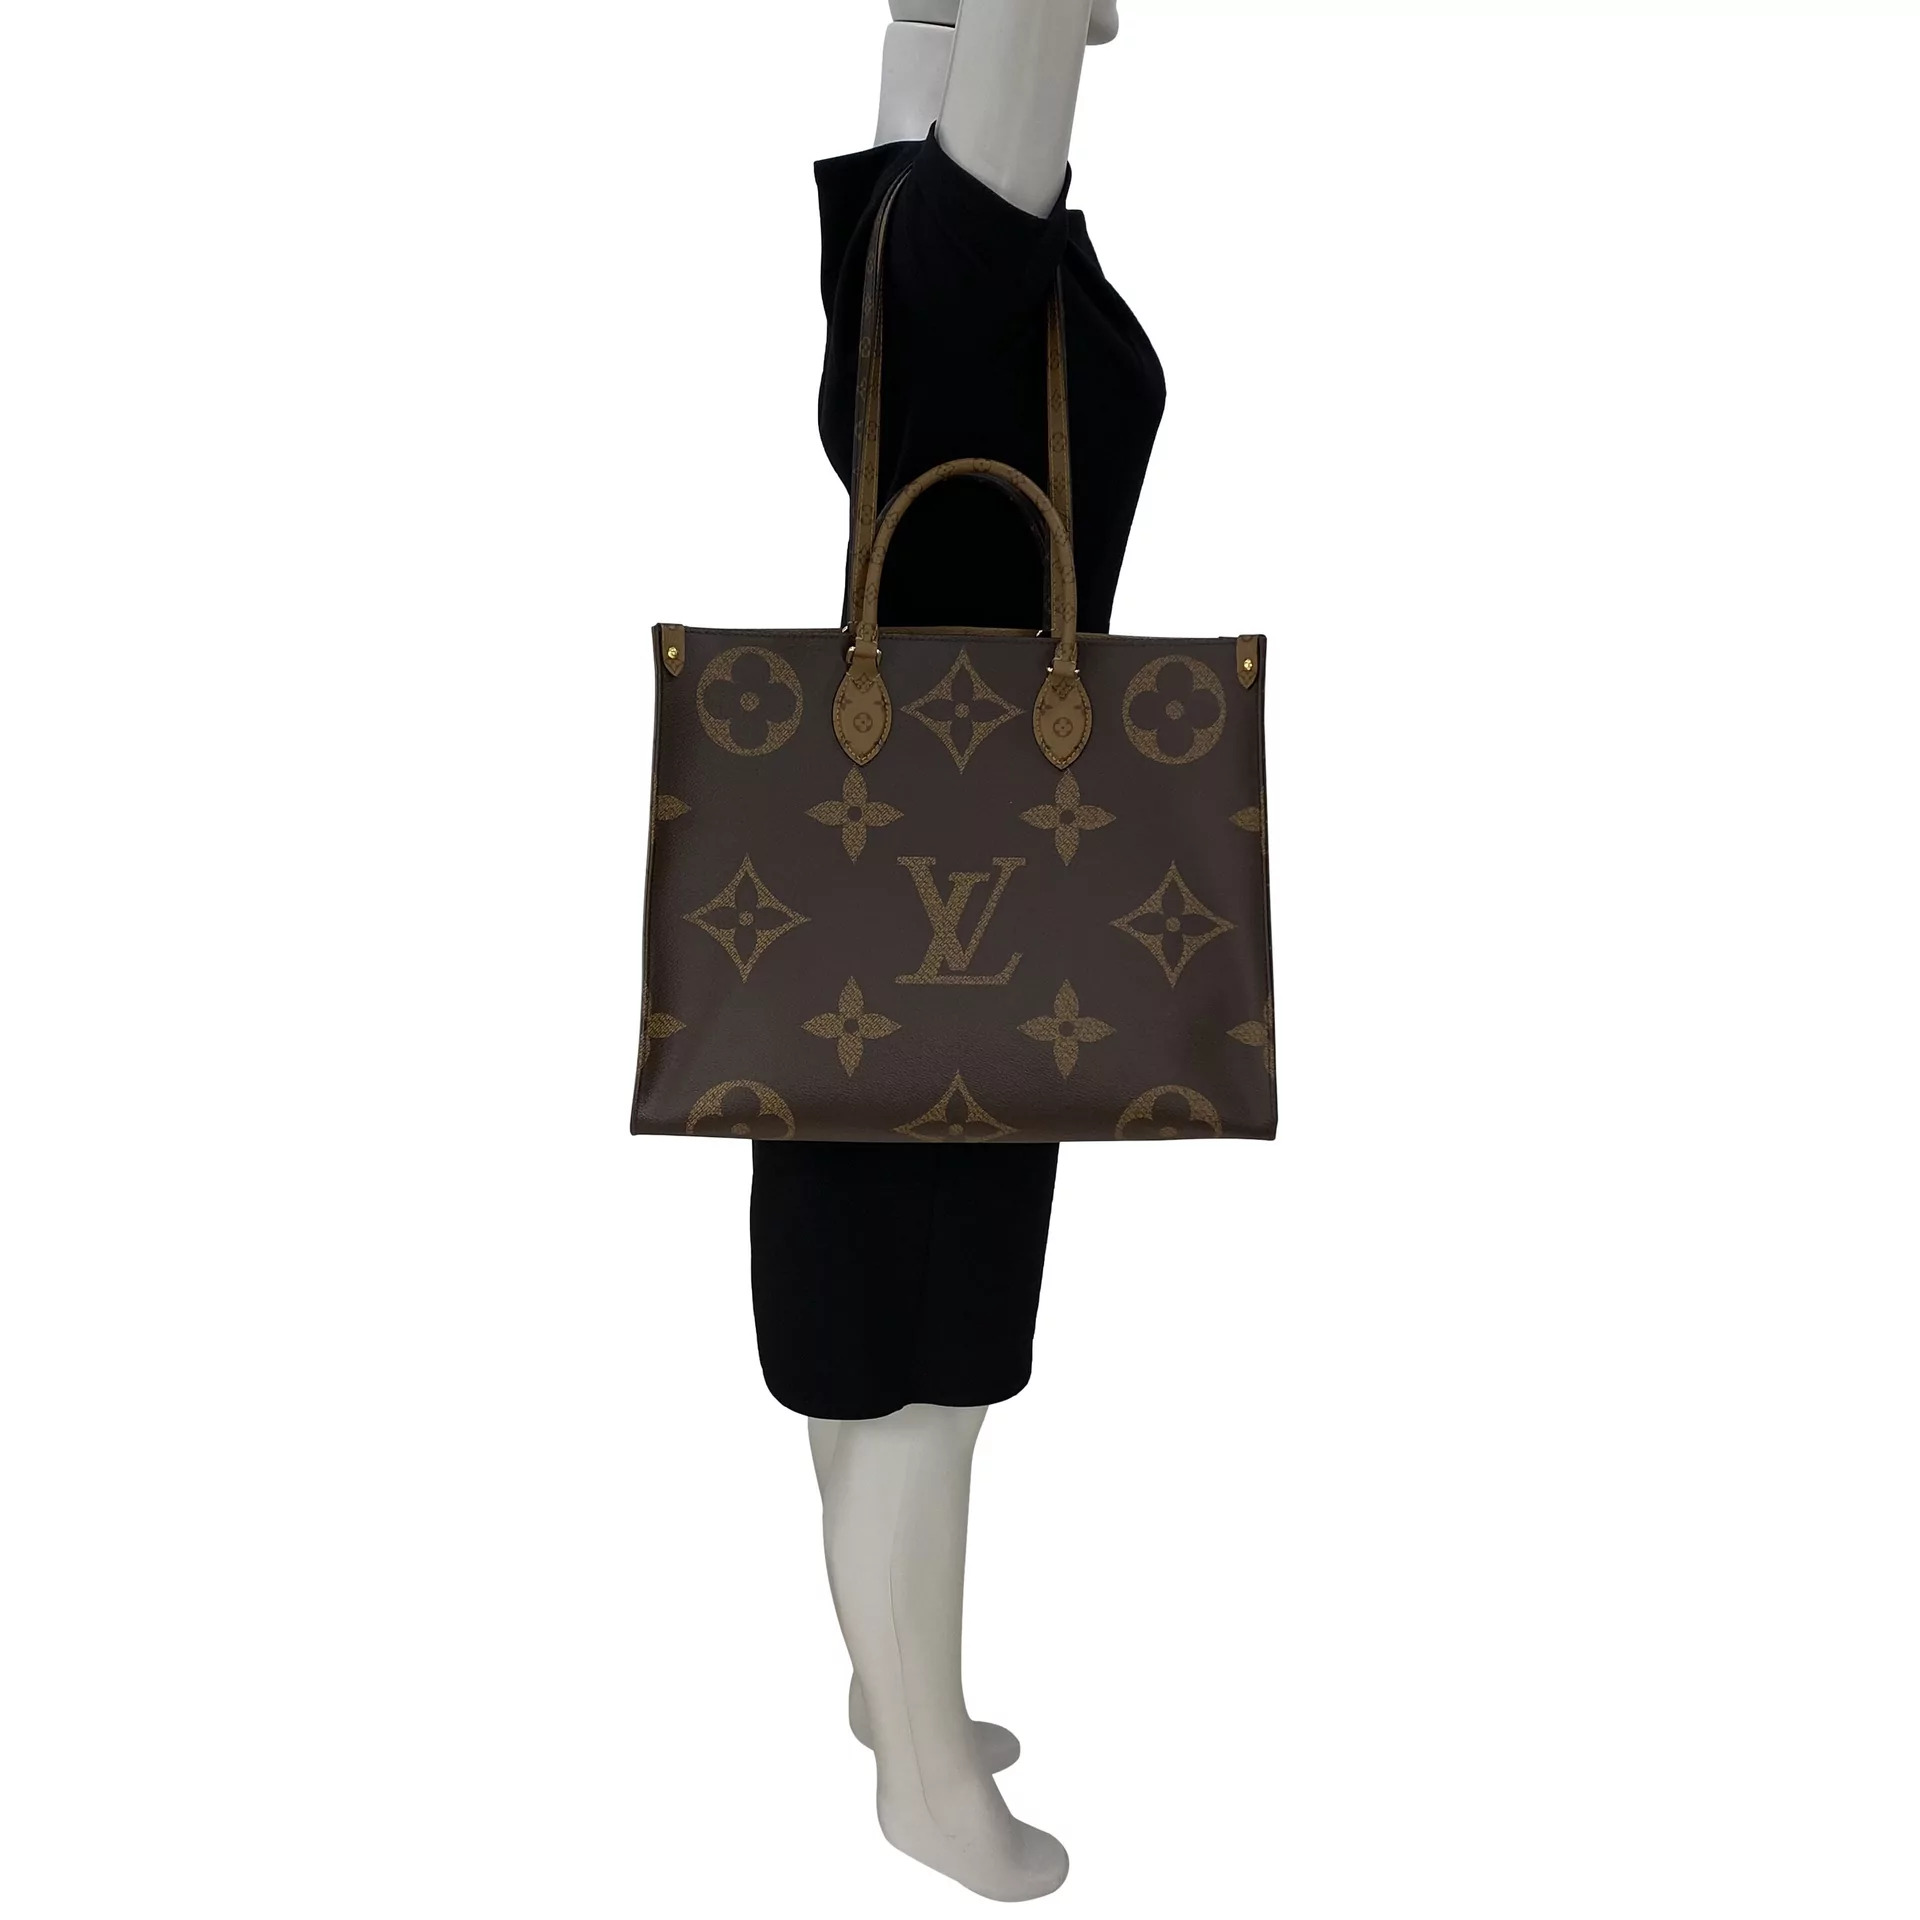 Preços baixos em Louis Vuitton Bagagem de Mão